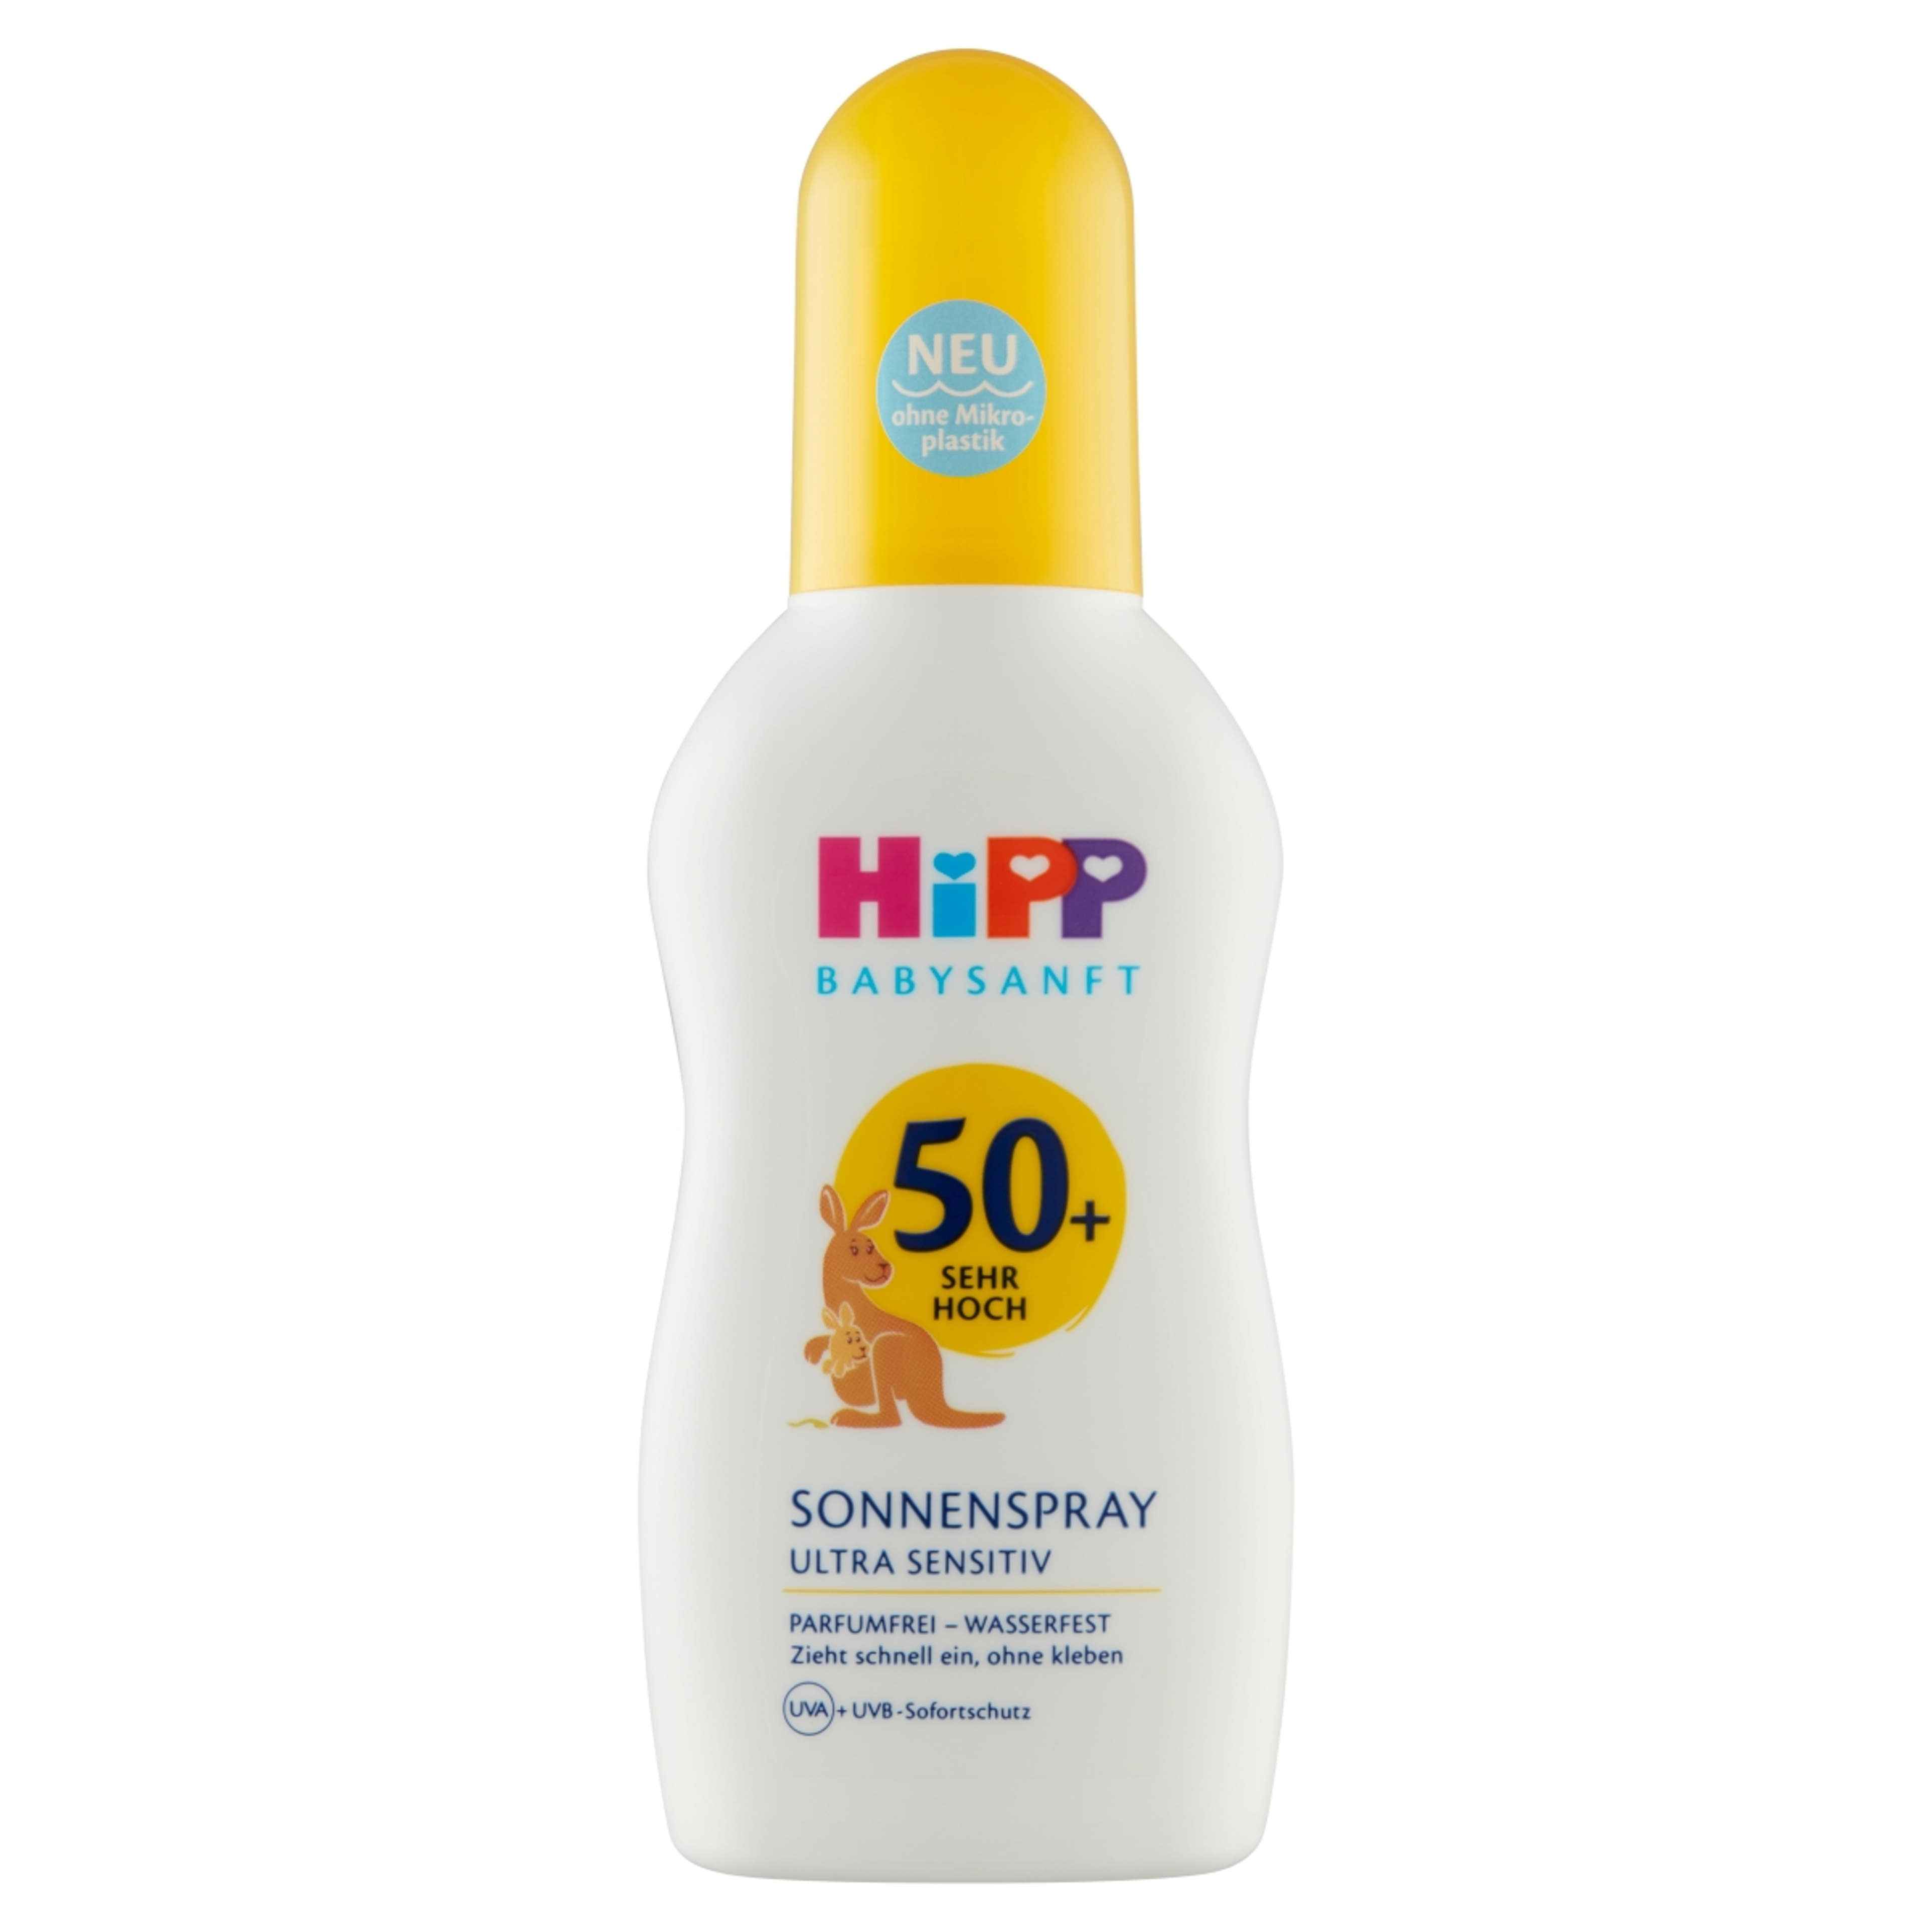 HiPP Babysanft napvédő spray babáknak és gyermekeknek F50+ - 150 ml